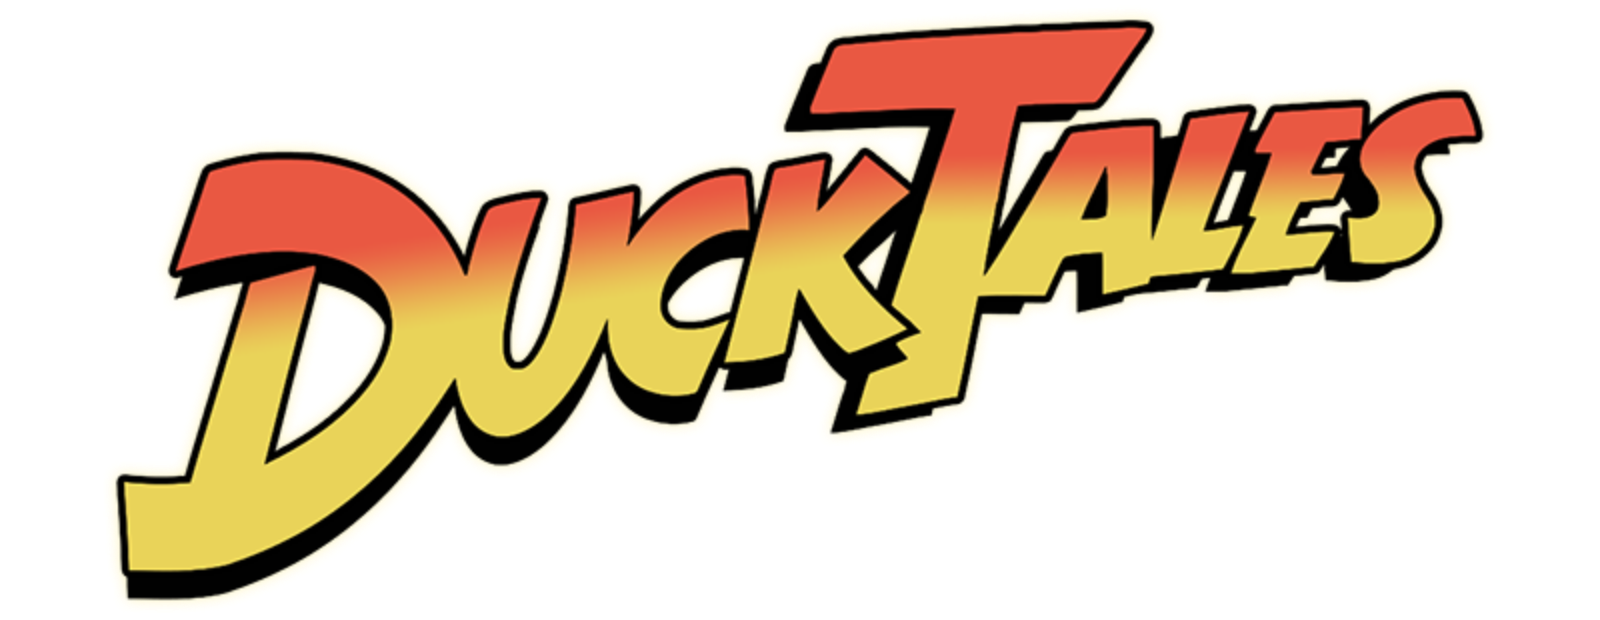 DuckTales 2017 Complete 